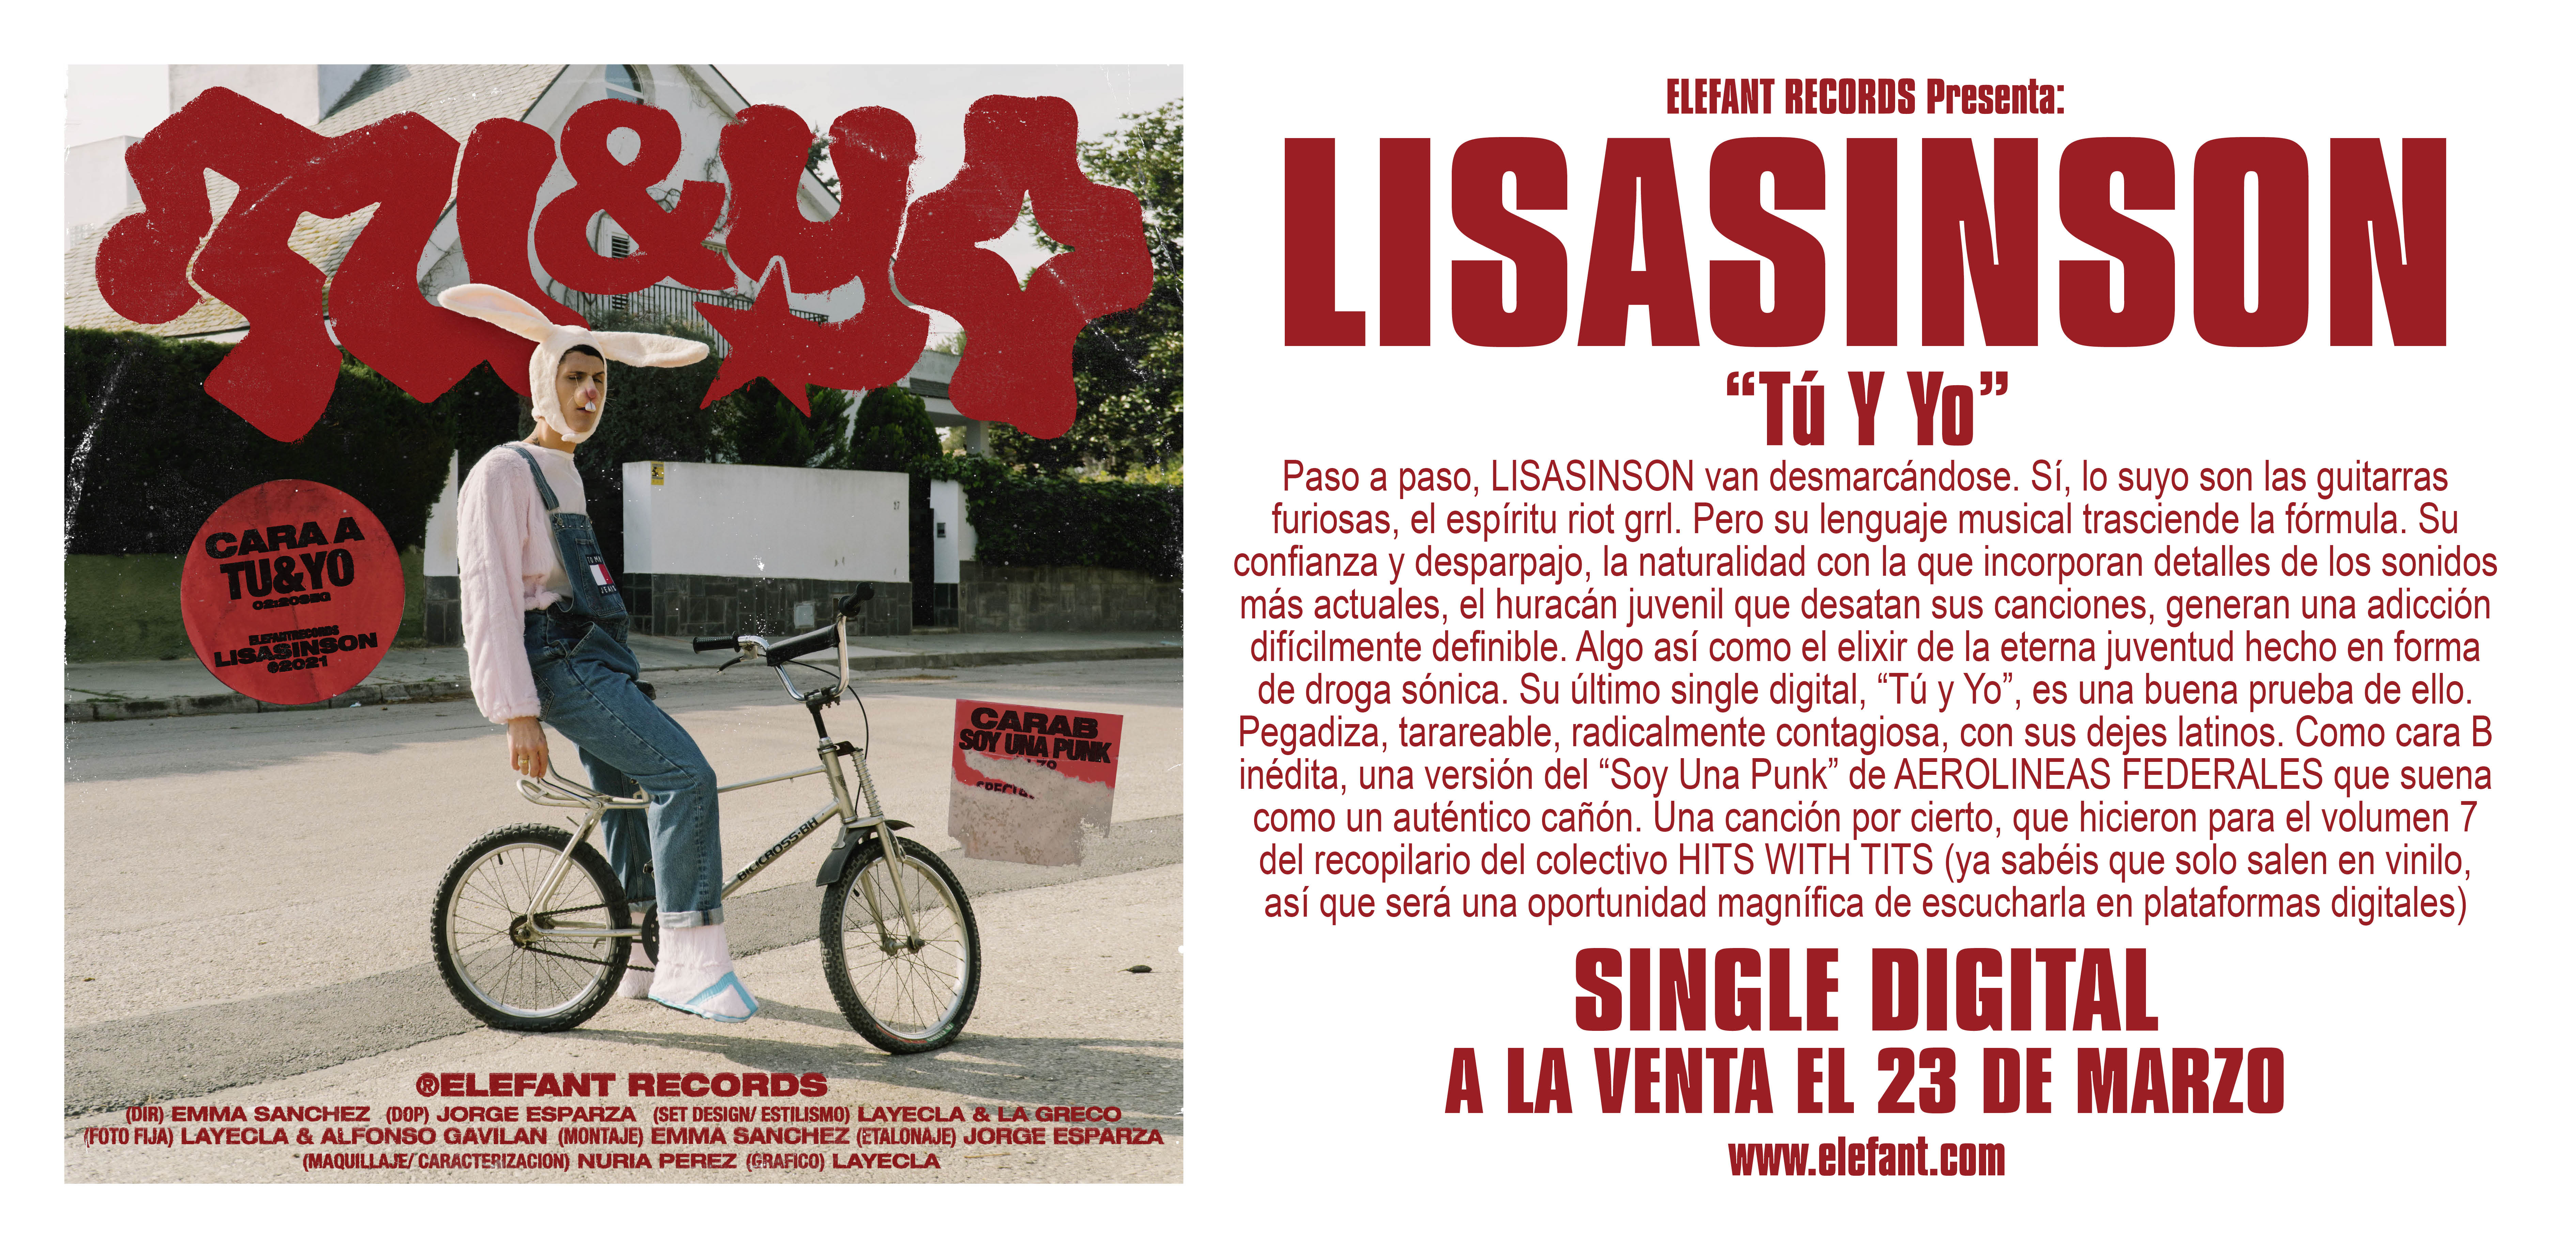 Lisasinson "Tú Y Yo" Single Digital